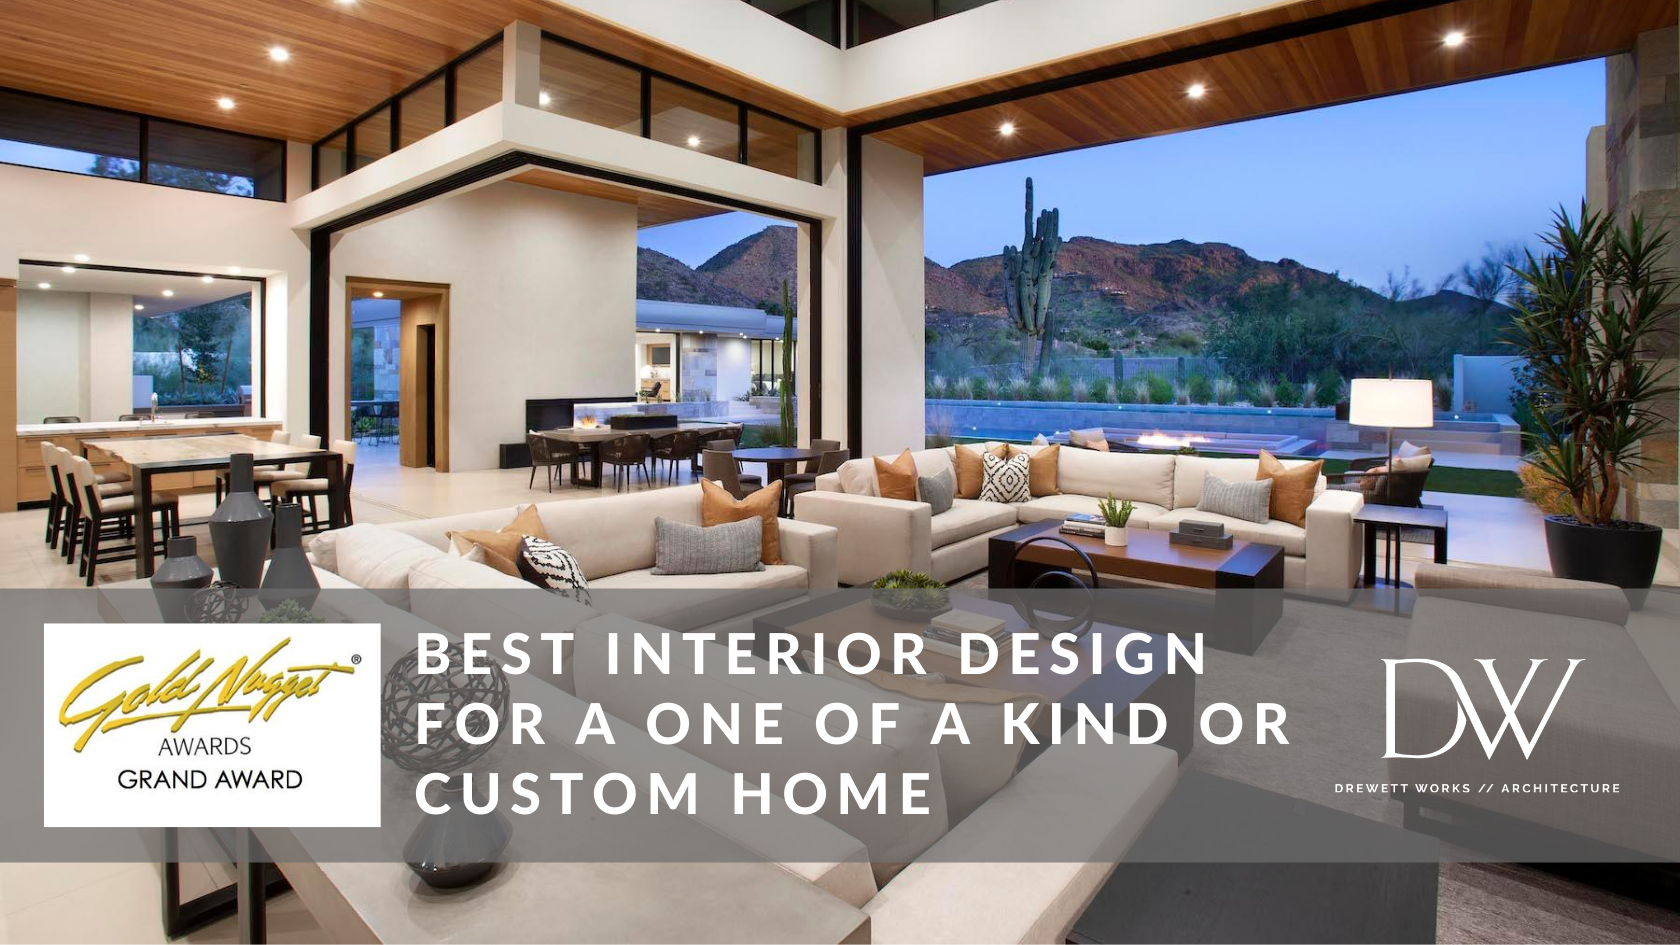 Grand Award winner for Best Interior Design of a Custom Home